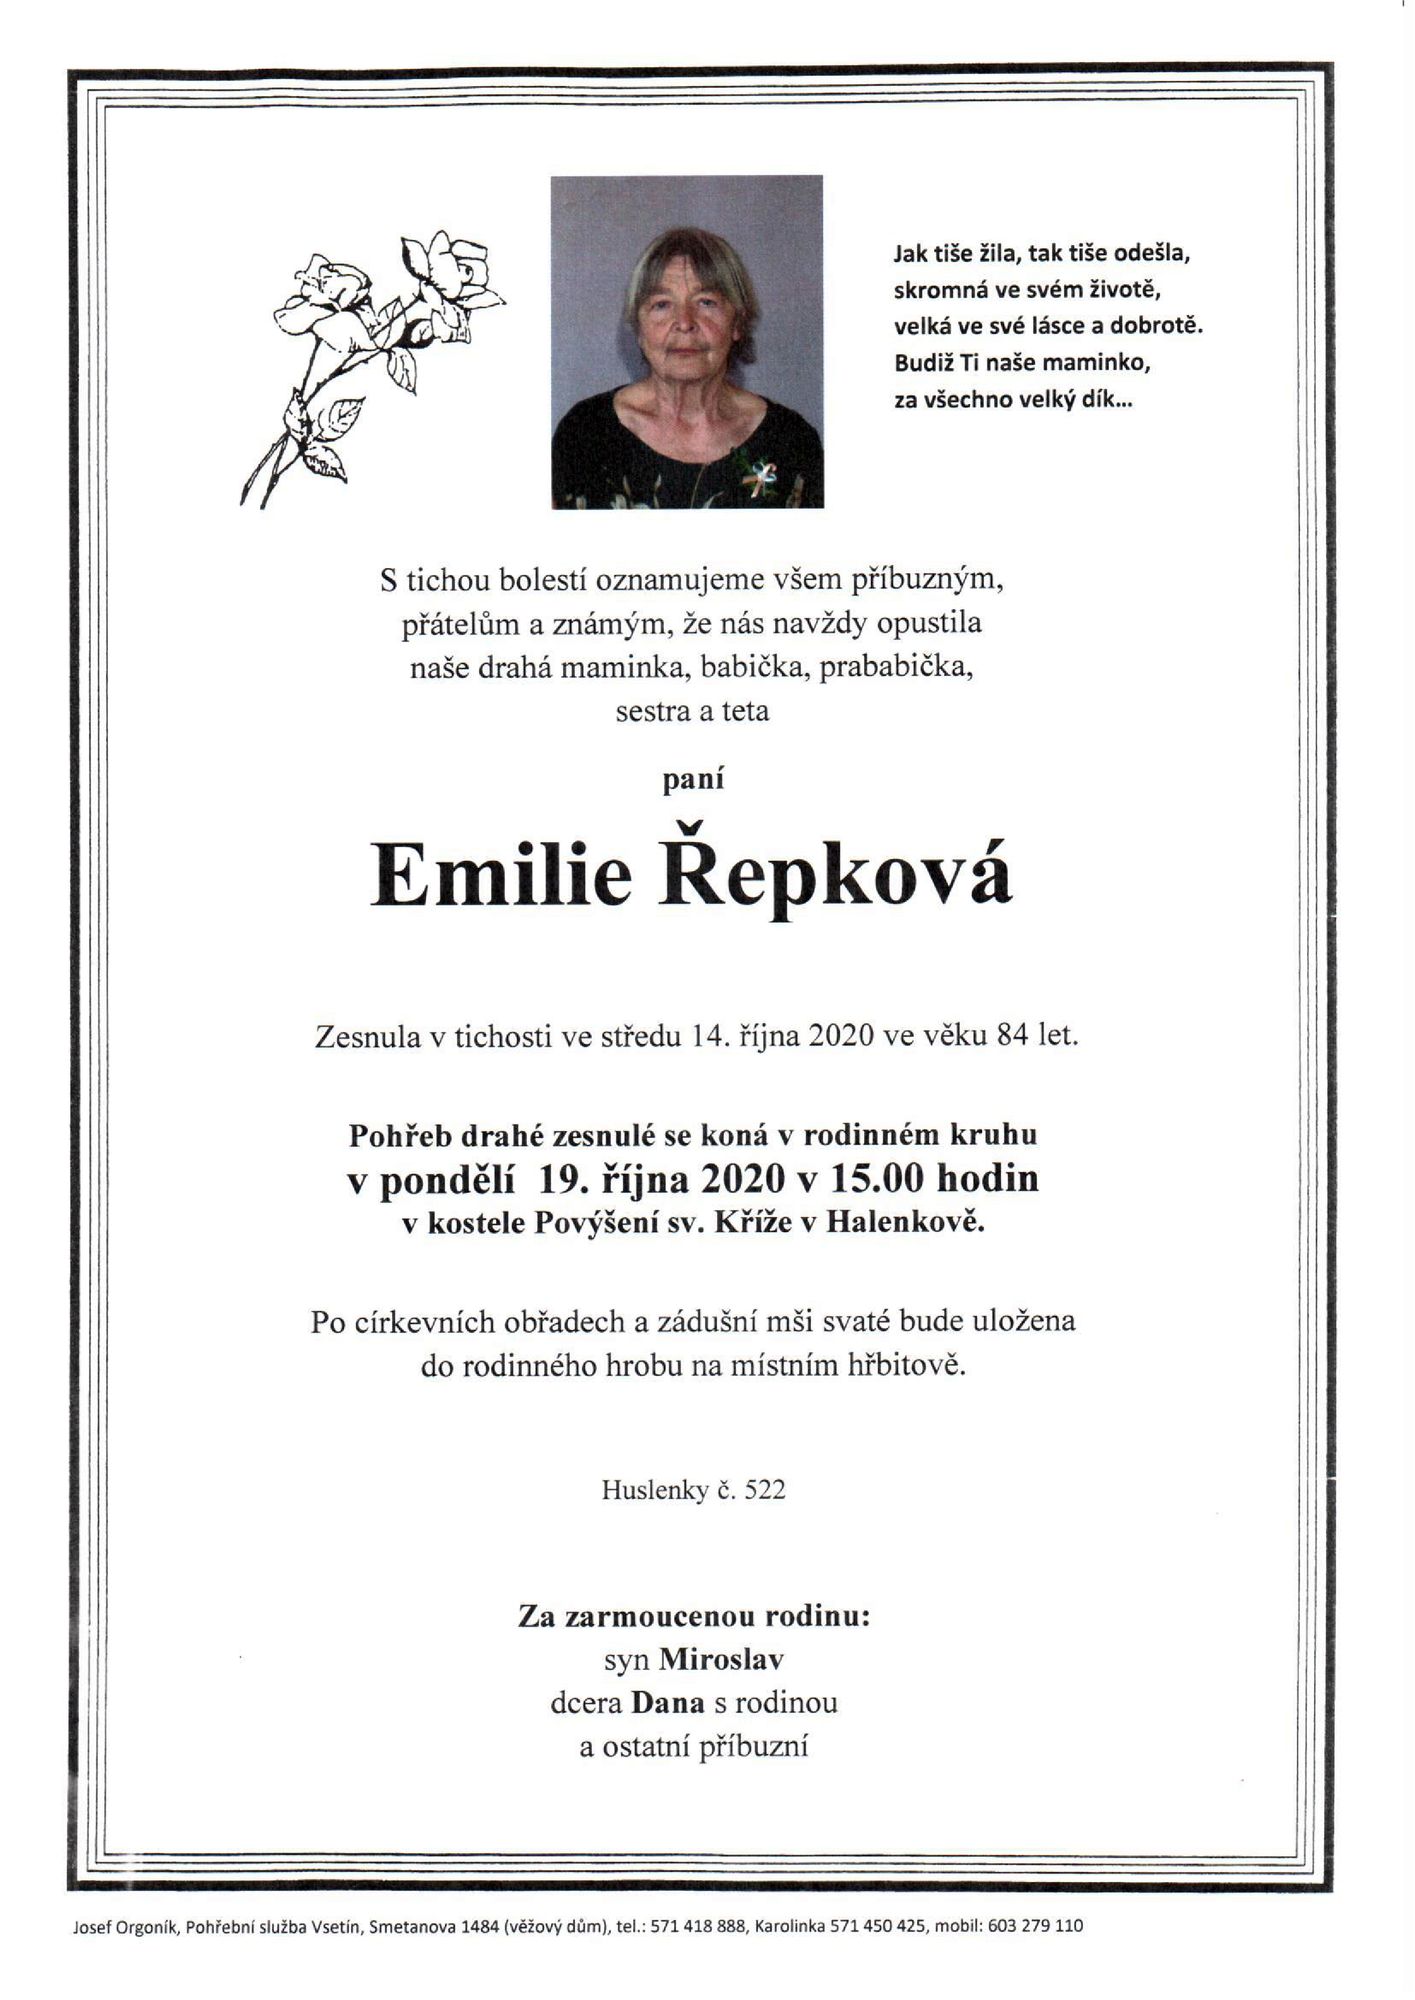 Emilie Řepková